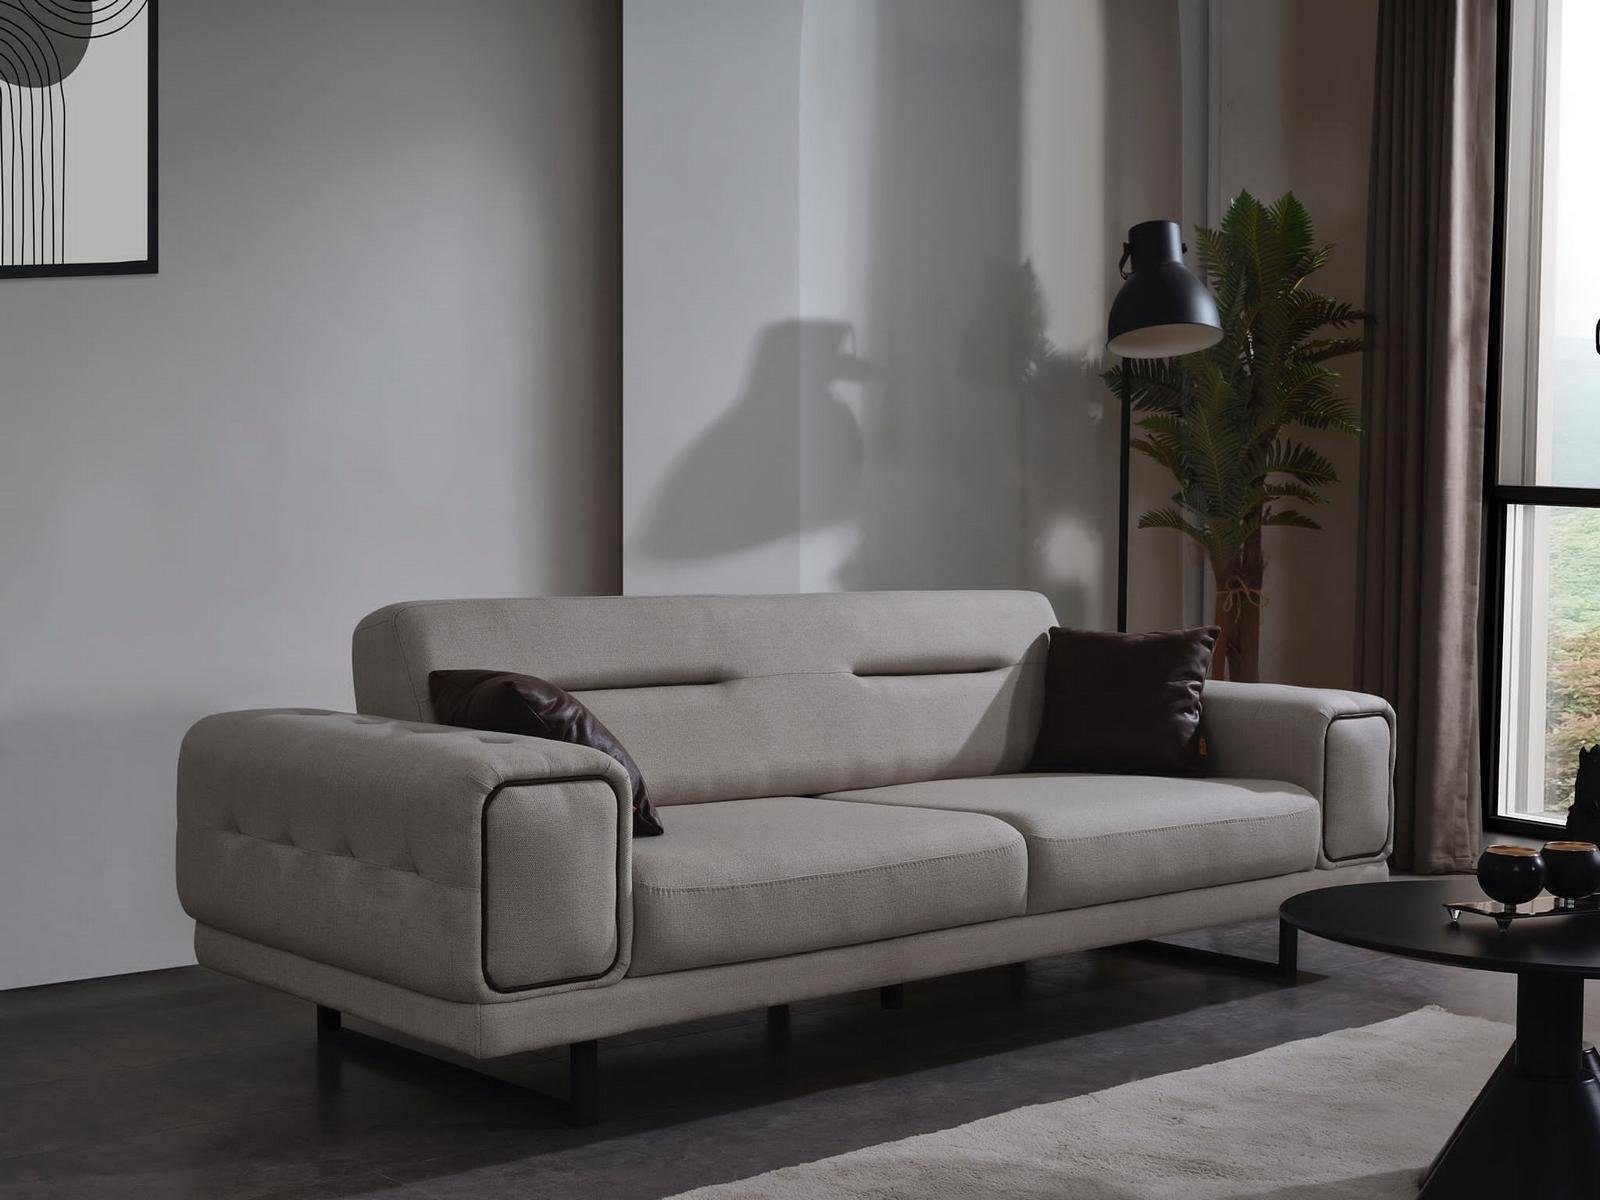 JVmoebel Sofa Modern Dreisitzer Neu, Wohnzimmer in Luxus Teile, Sofa Europa 1 MAde Couch Sofas Einrichtung